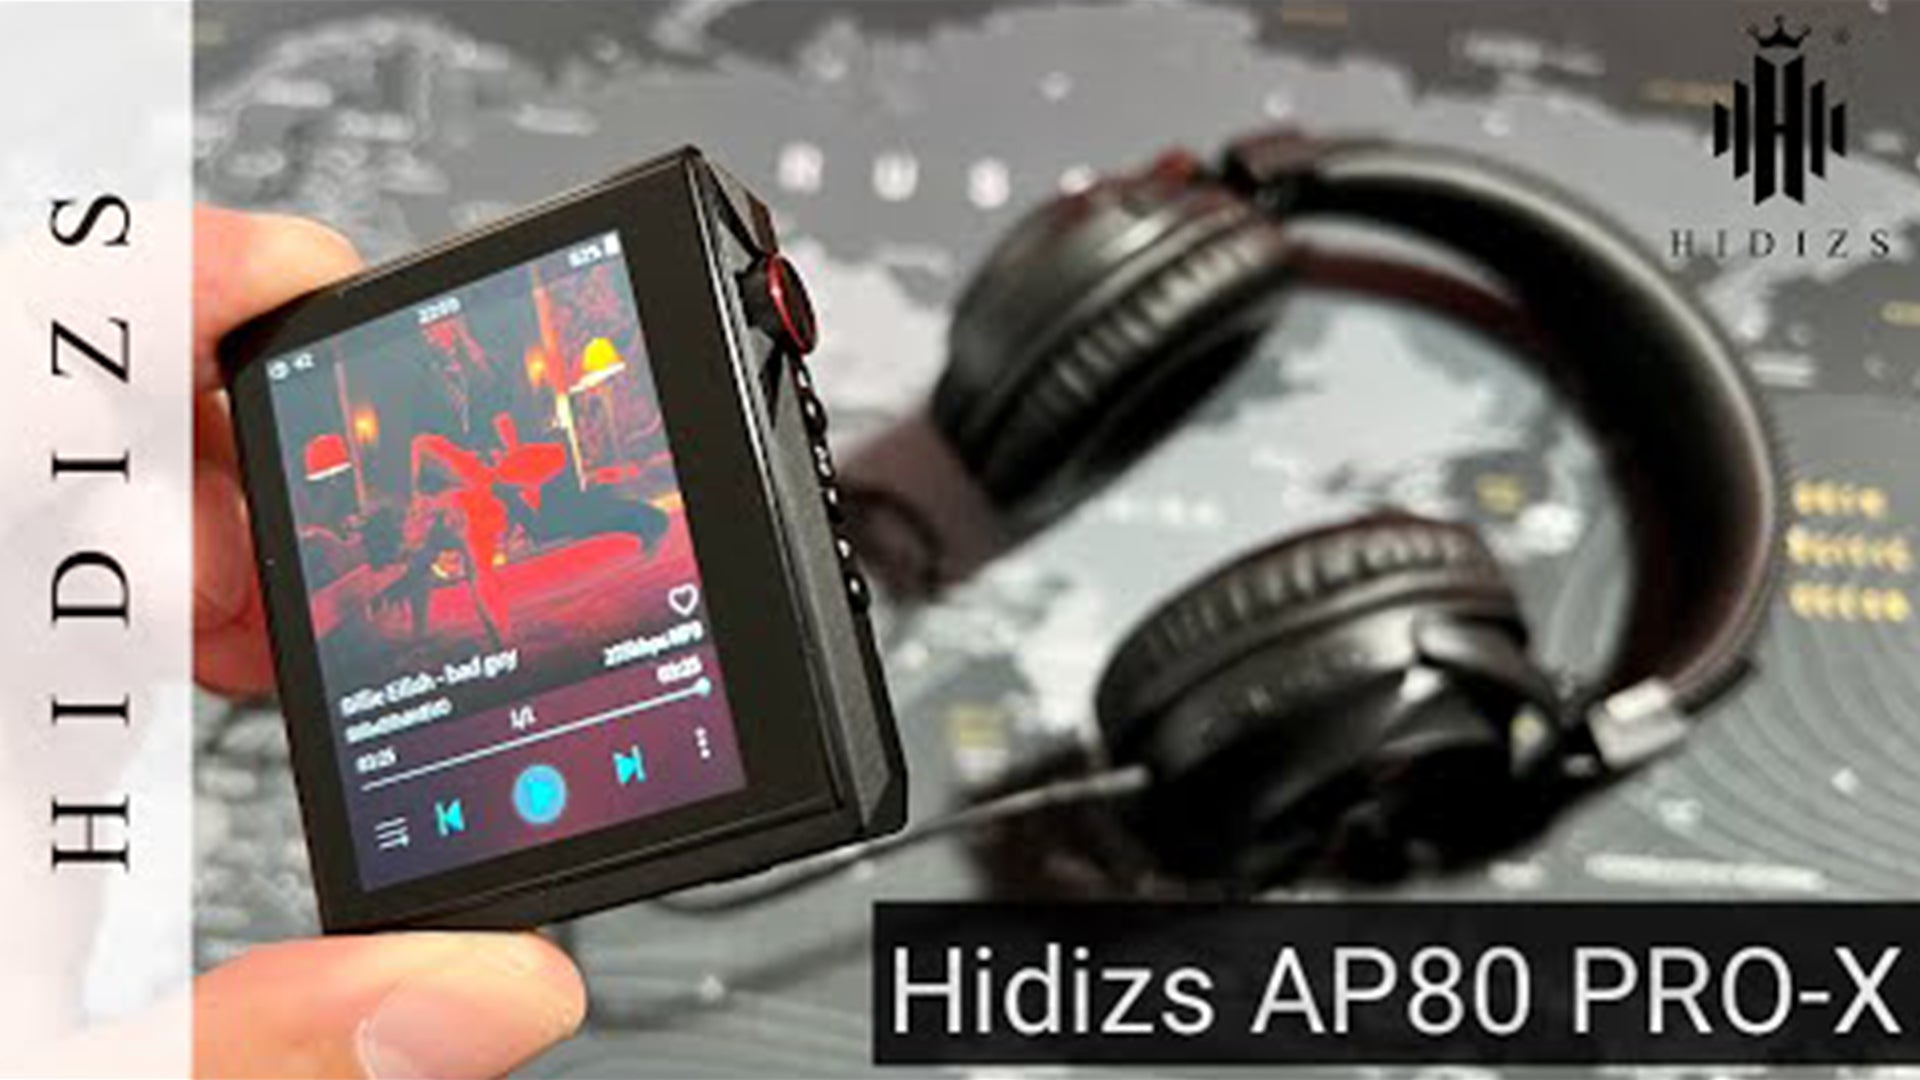 HIDIZS AP80 Pro-X - The Best Portable Music Player